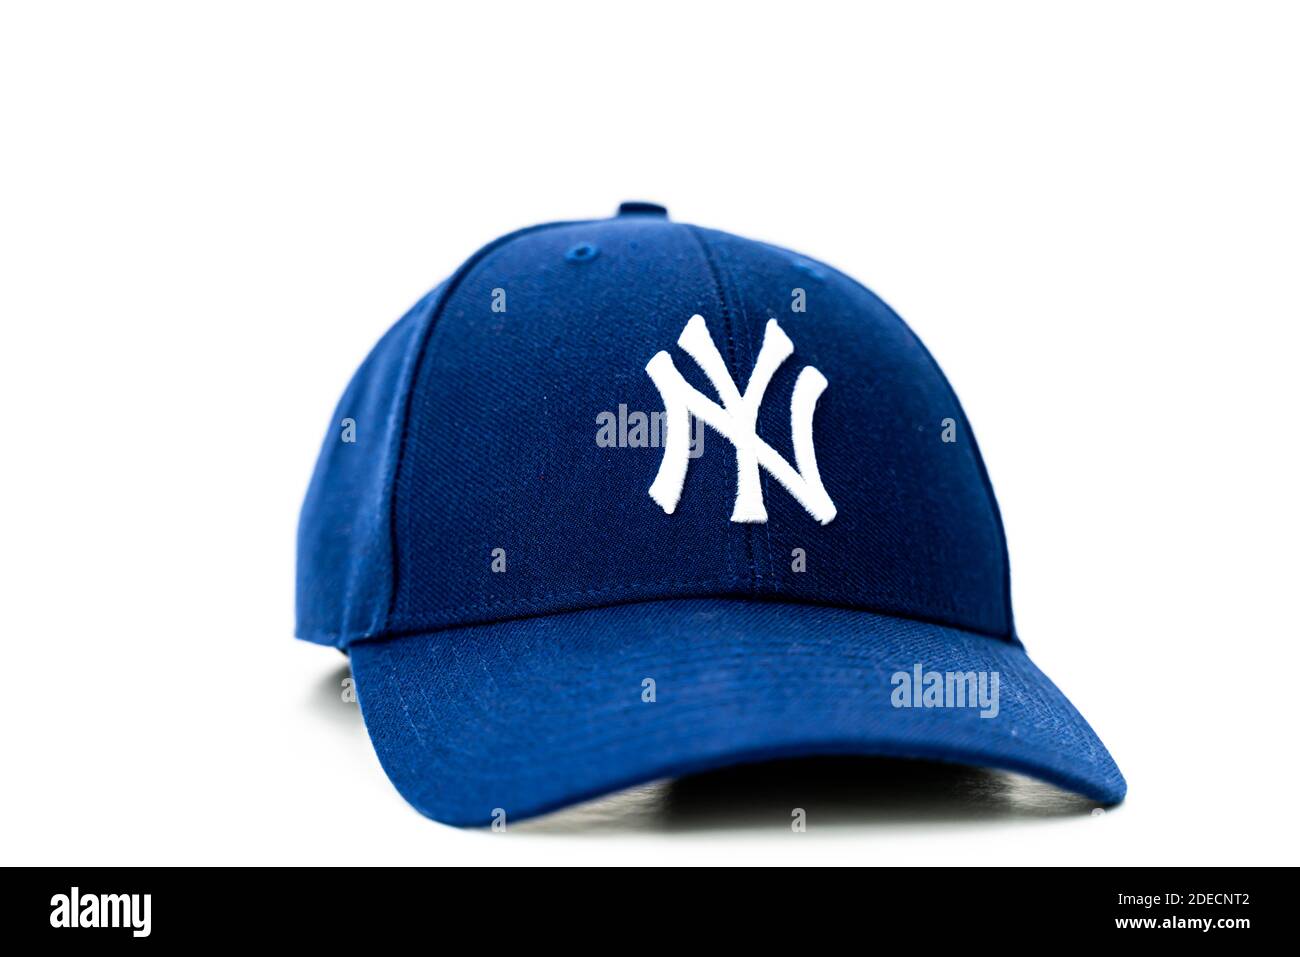 Chapeau de baseball bleu avec logo NY en blanc sur le devant. Isolé sur fond blanc. Photo de haute qualité Banque D'Images